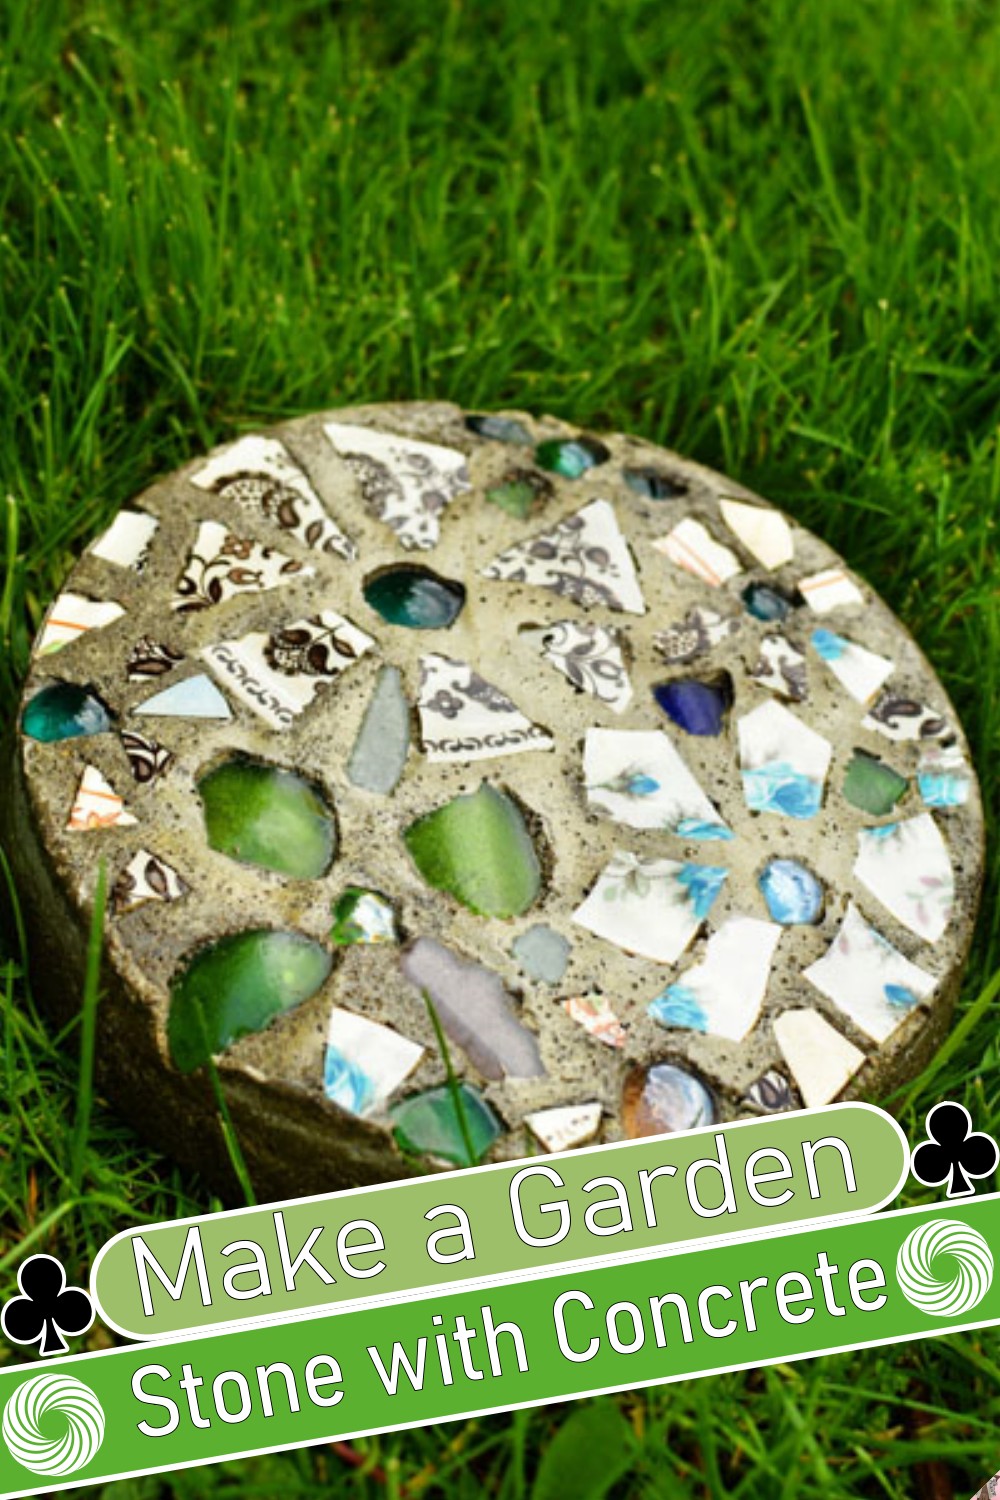 Make a Garden Stone with Concrete